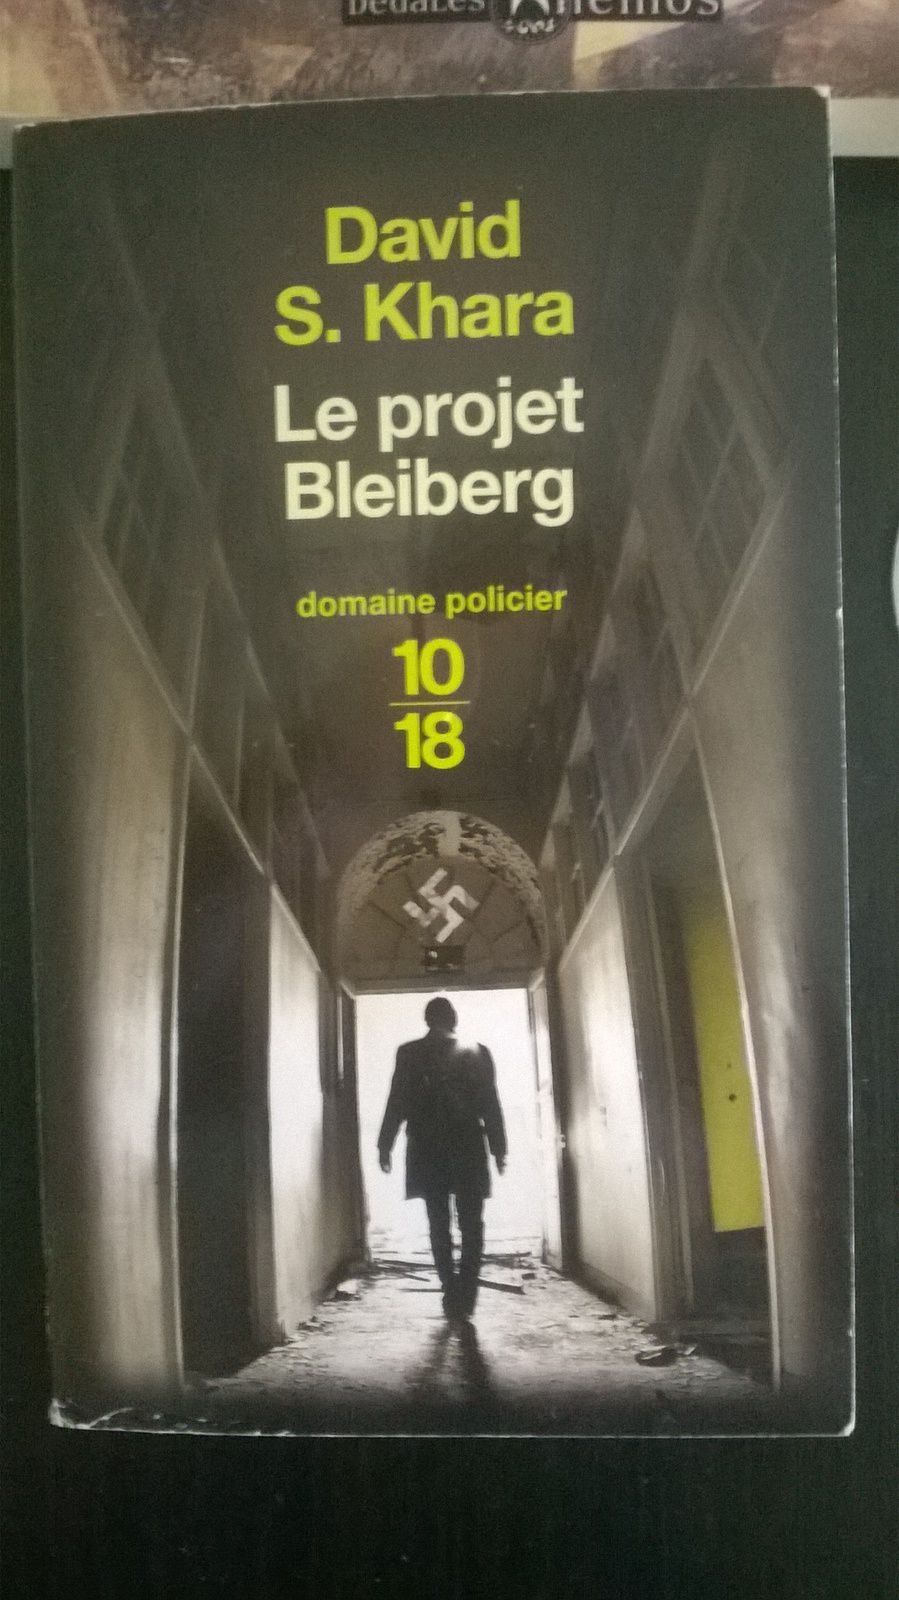 Troisième livre de ma wish-list: Le projet Bleiberg de David S. Khara, un roman policier que je souhaite depuis très longtemps.